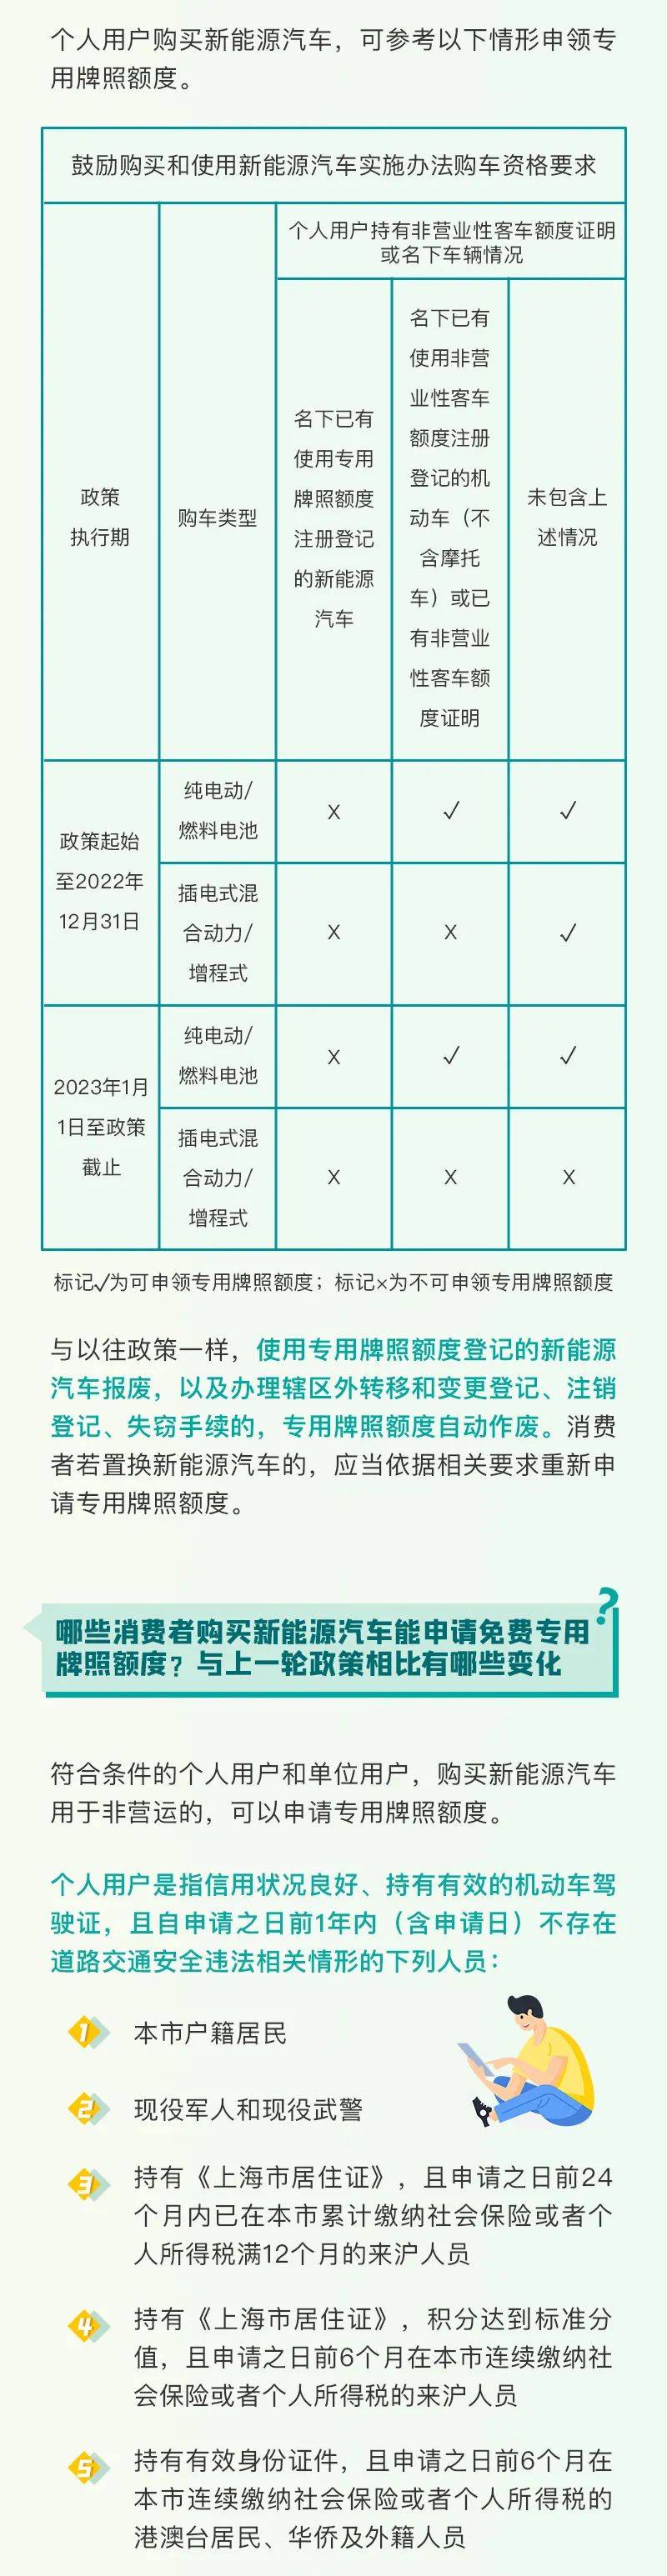 上海发布新能源汽车推广政策:免费牌照政策延续至2023年